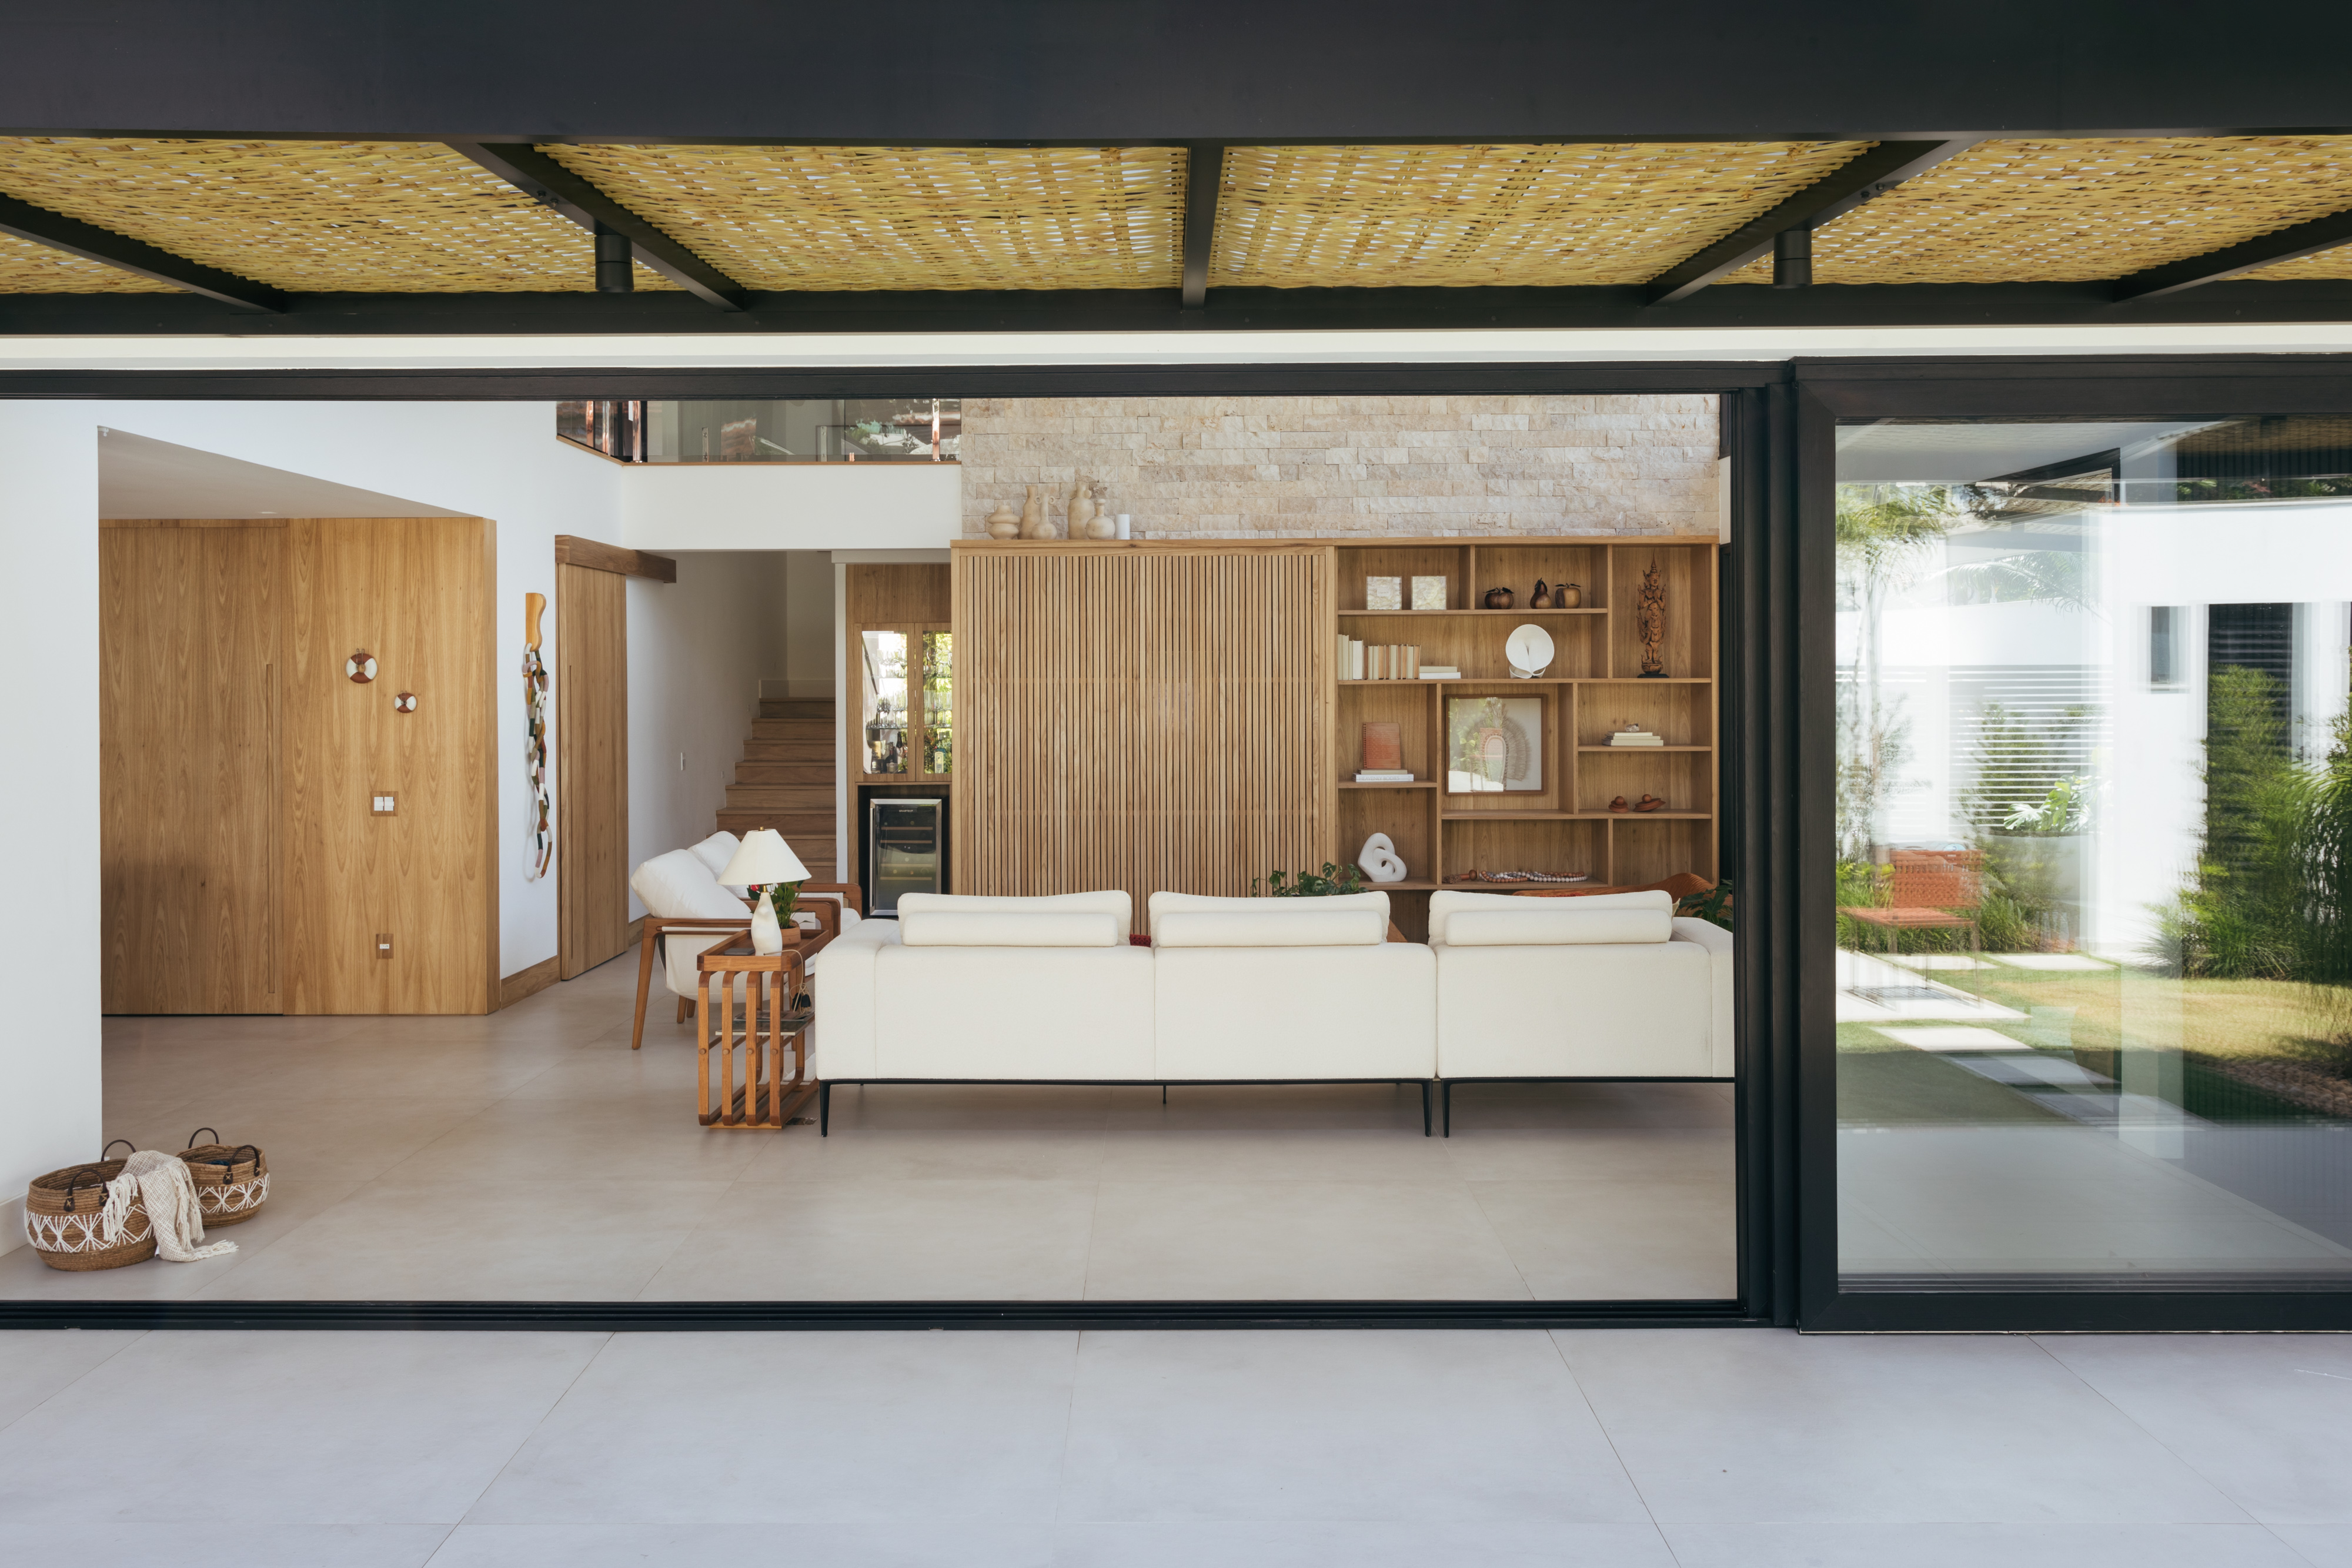 Pergolados com forro em fibras de bambu trançadas envolvem casa de 195 m². Projeto de Amanda Miranda. Na foto, sala de estar, portas de vidro,